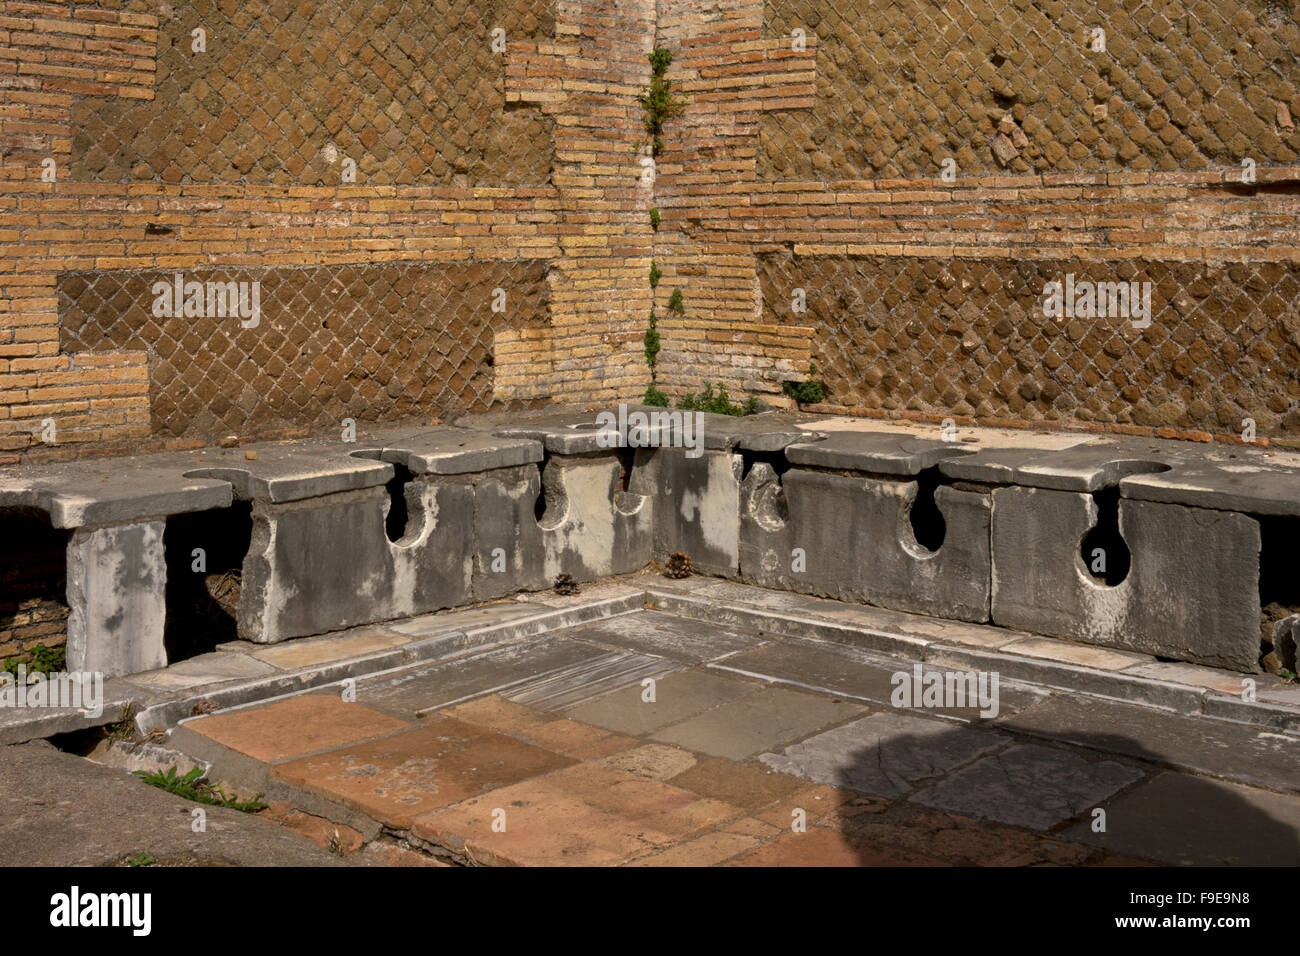 La Domus de latrines du Triclini dans l'ancien port romain d'Ostie, près de Rome, Italie, Europe Banque D'Images